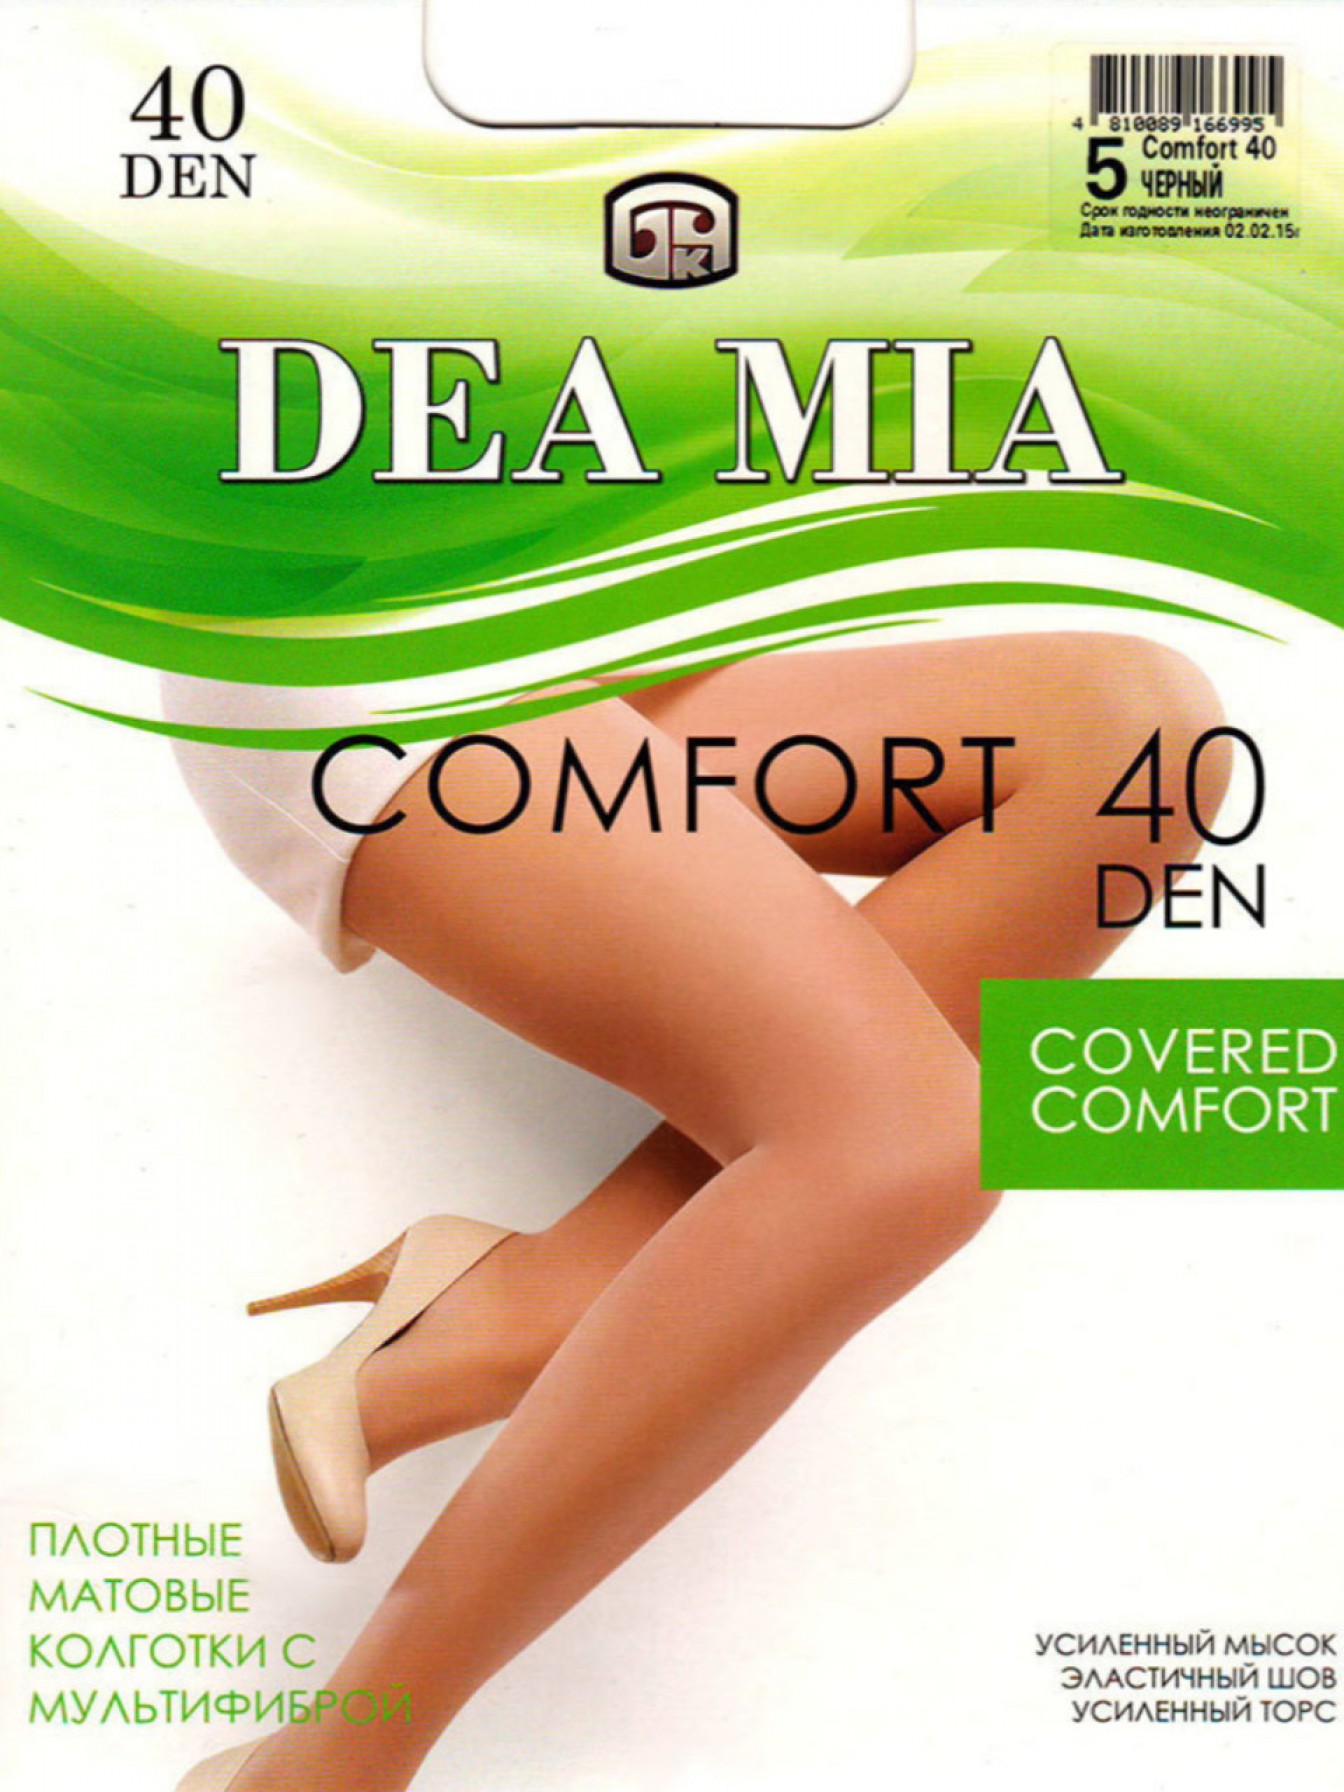 Купить комфортные женские колготки средней плотности Dea Mia Comfort 40